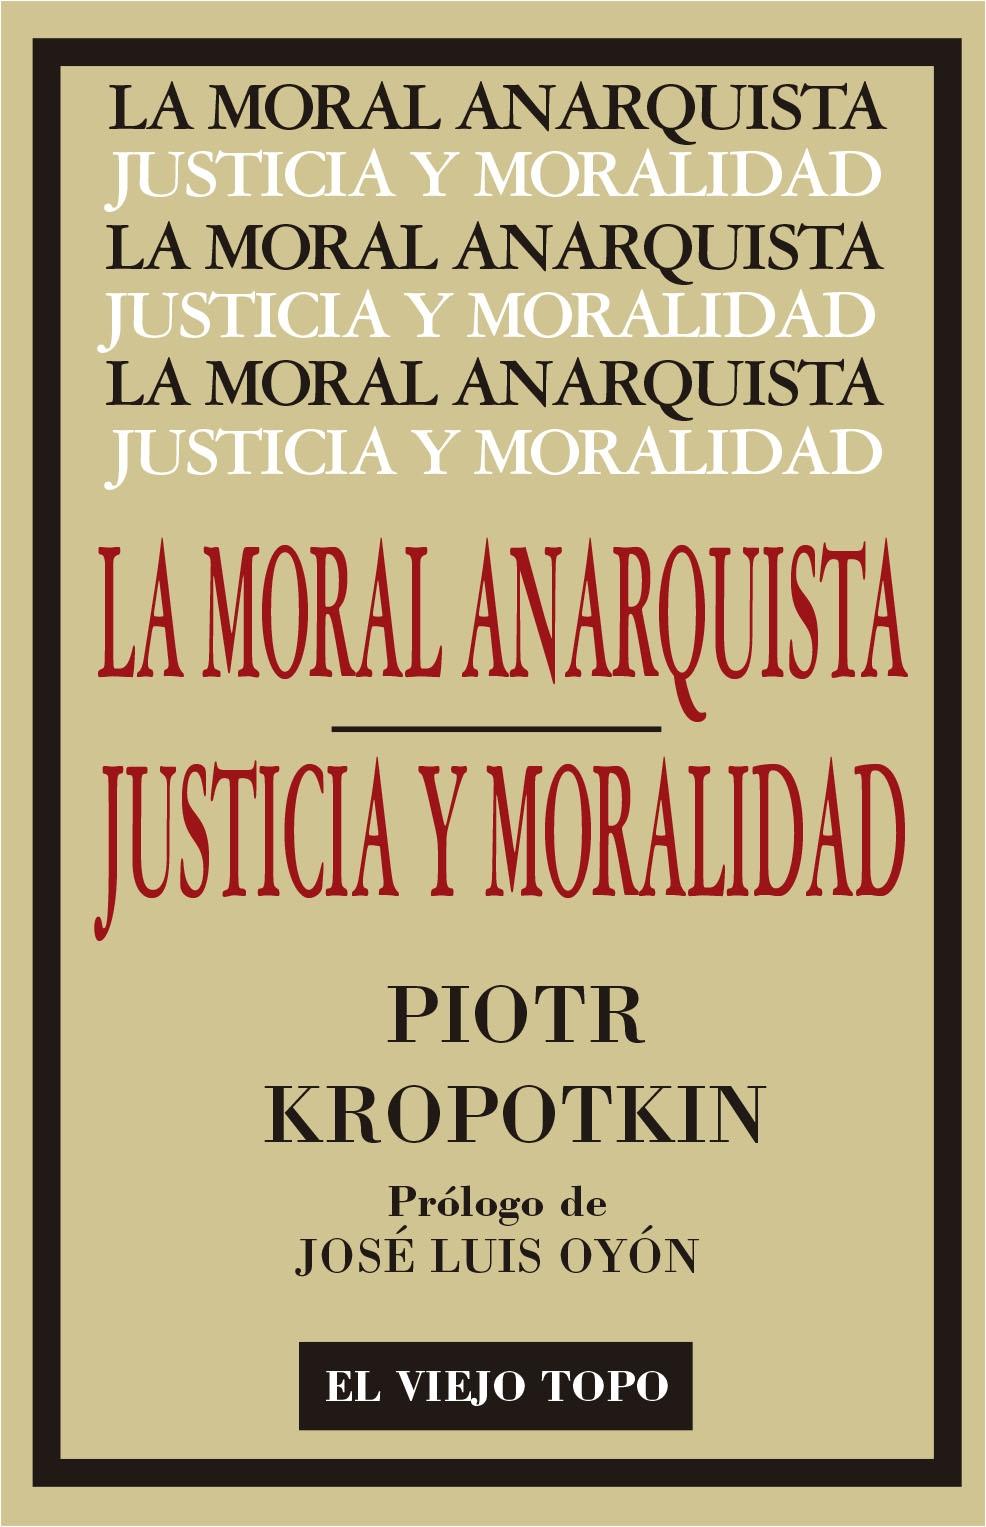 LA MORAL ANARQUISTA "SEGUIDO POR JUSTICIA Y MORALIDAD"